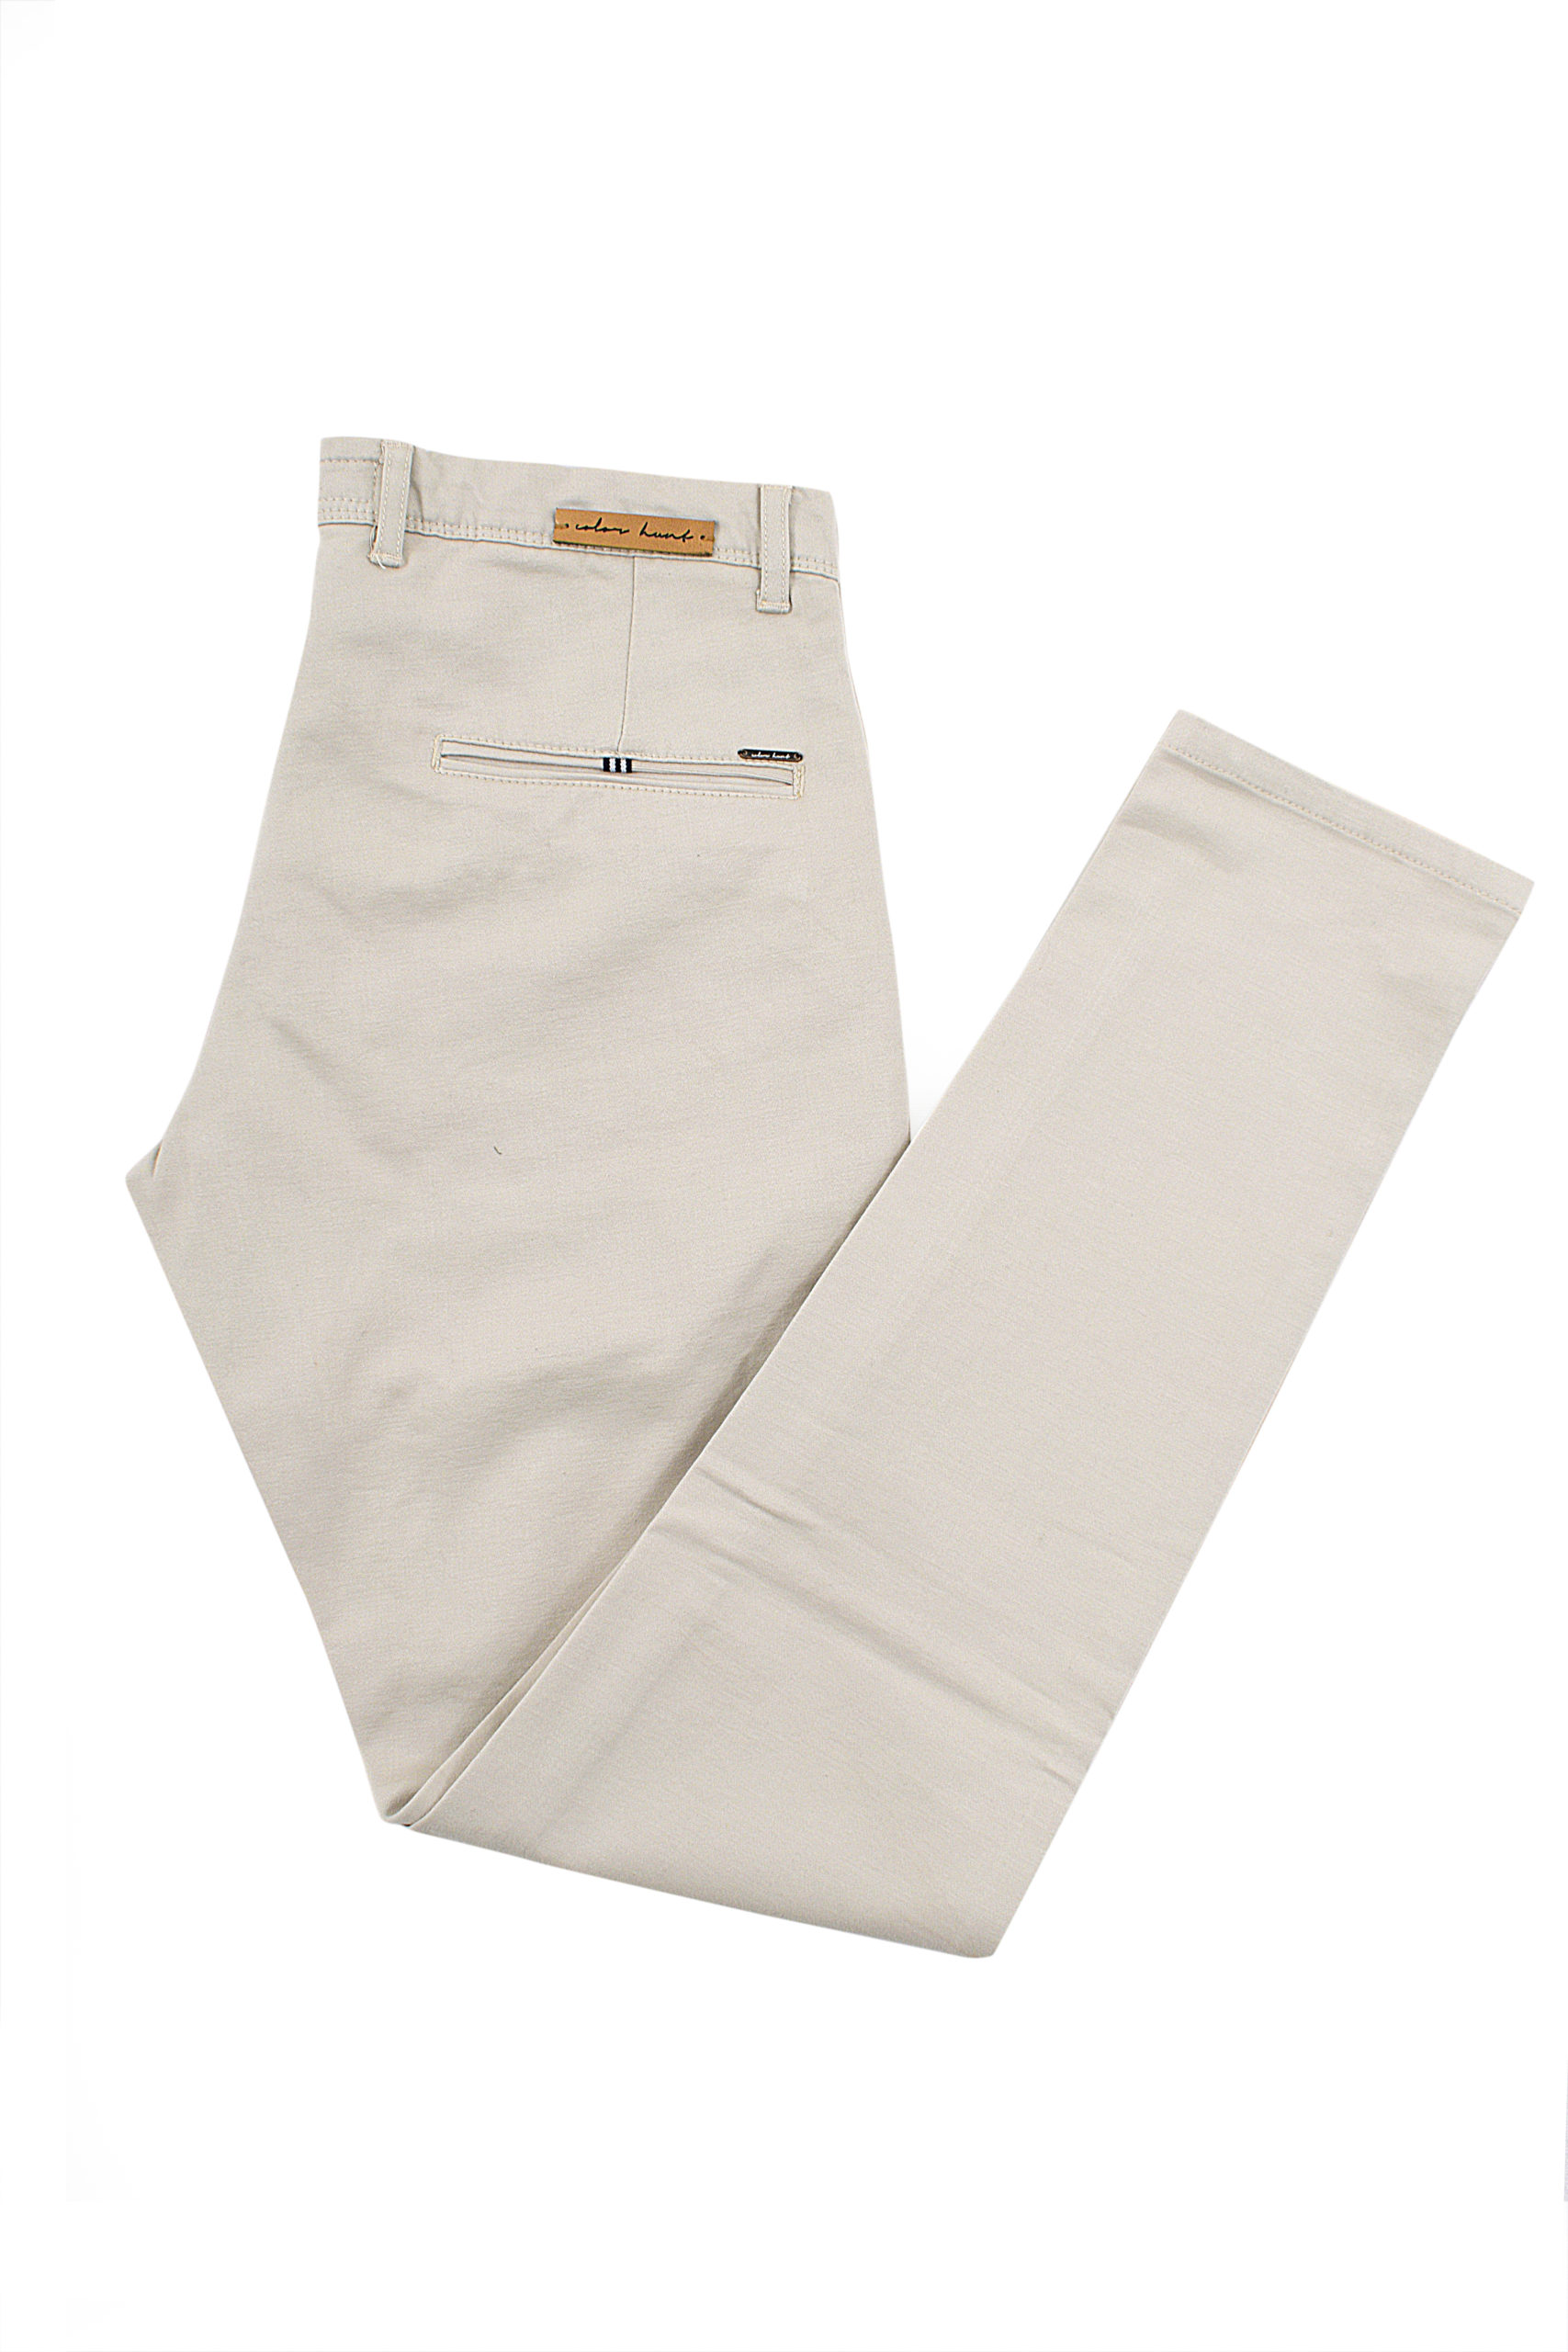 Cotton Trouser - Colorhunt Clothing